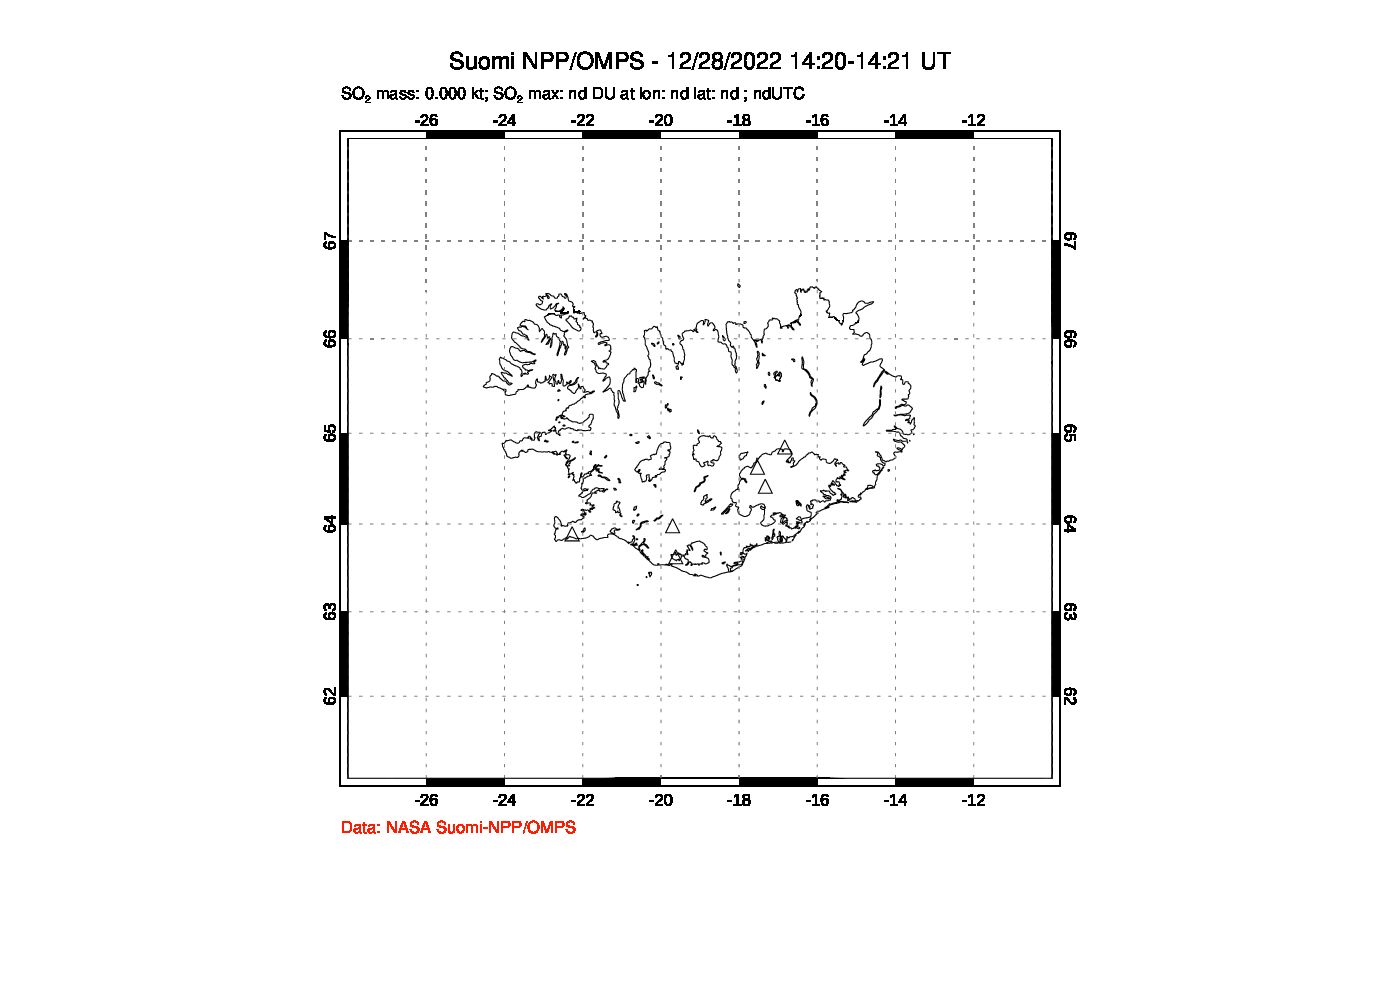 A sulfur dioxide image over Iceland on Dec 28, 2022.